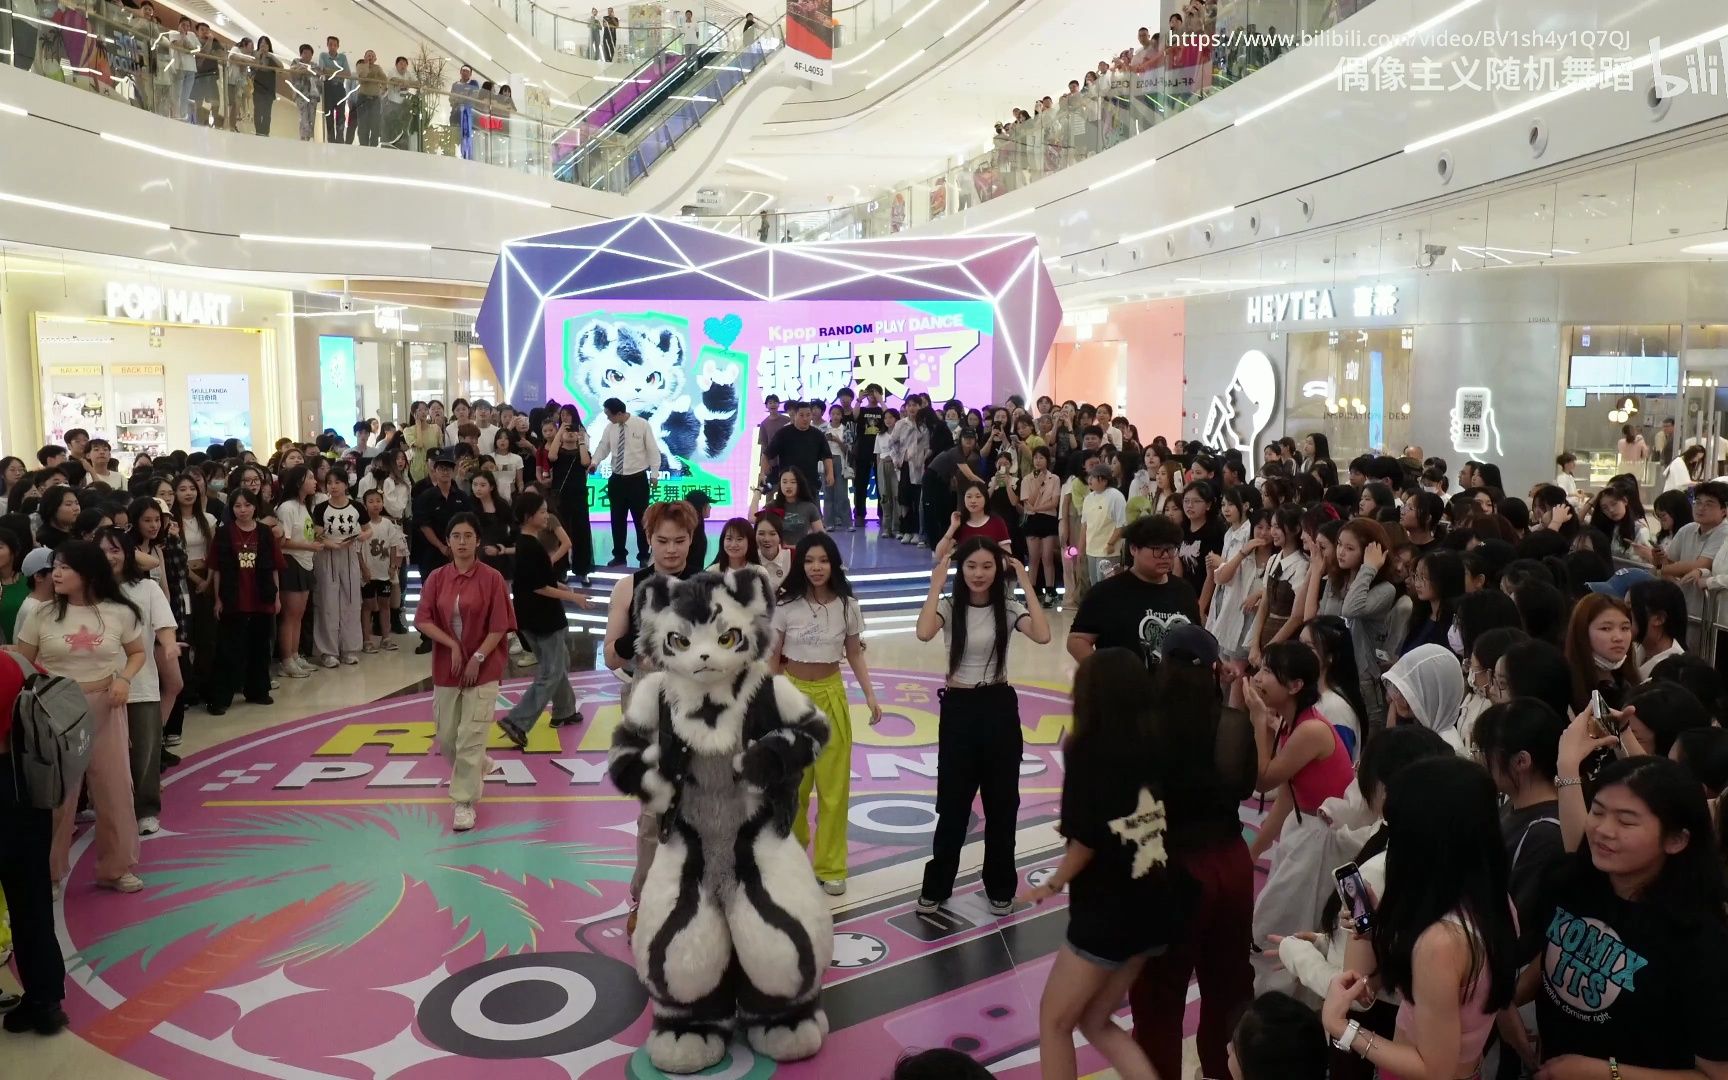 【银碳, 兽装舞蹈】2023年8月10日江阴的随机舞蹈活动 - 银碳Gintan 参与的部分